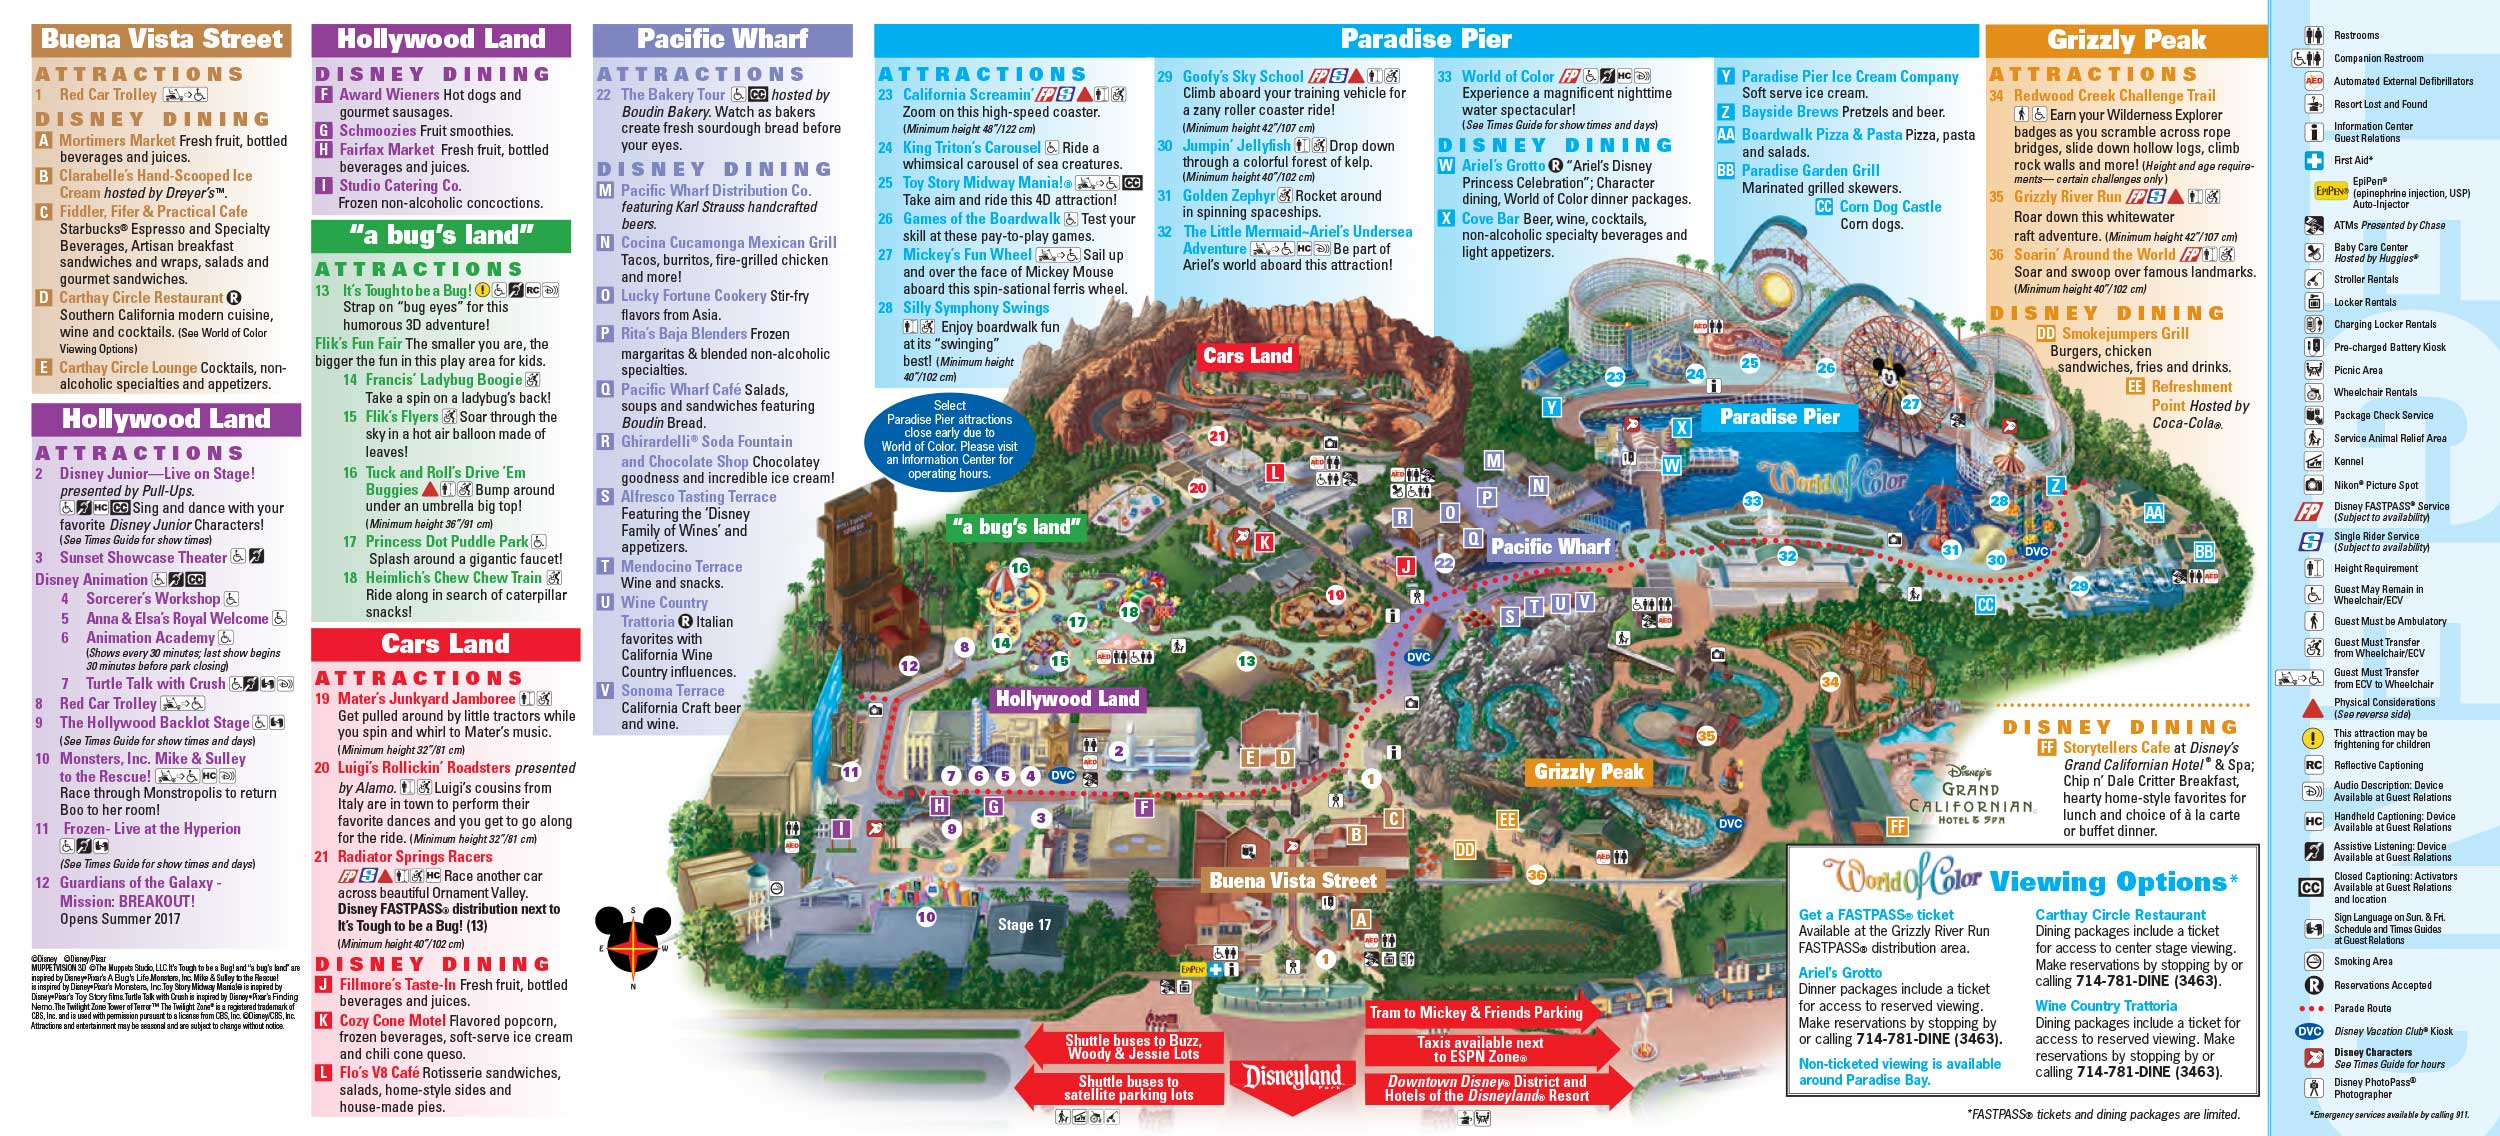 Disneyland Park Map In California, Map Of Disneyland - Theme Parks California Map